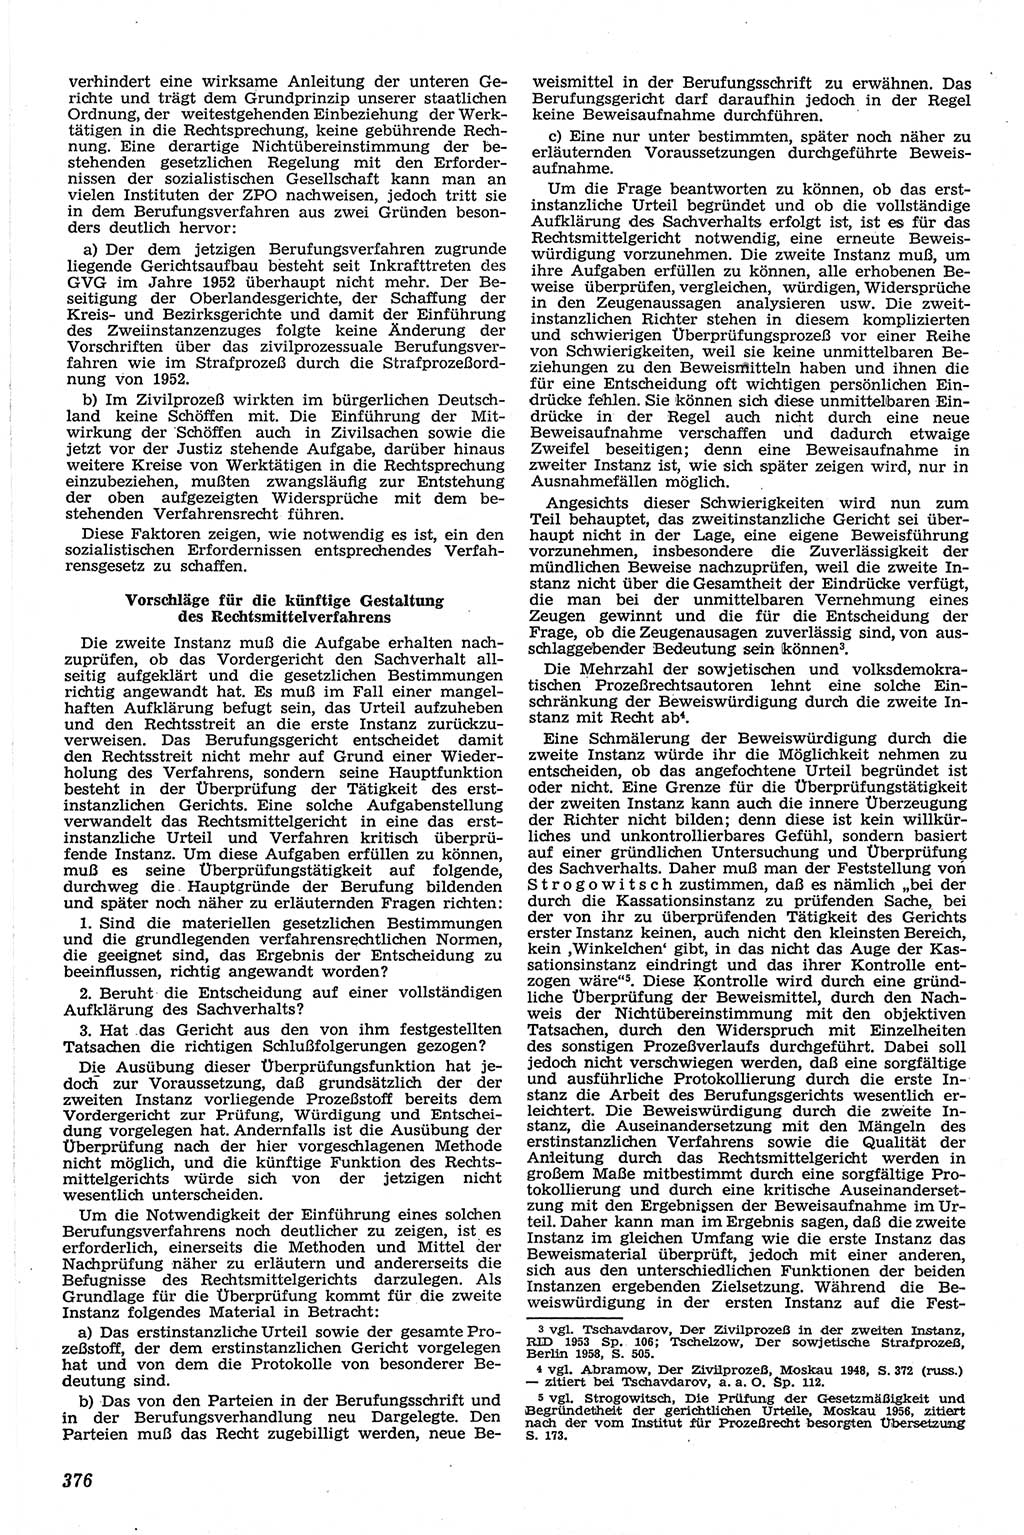 Neue Justiz (NJ), Zeitschrift für Recht und Rechtswissenschaft [Deutsche Demokratische Republik (DDR)], 13. Jahrgang 1959, Seite 376 (NJ DDR 1959, S. 376)